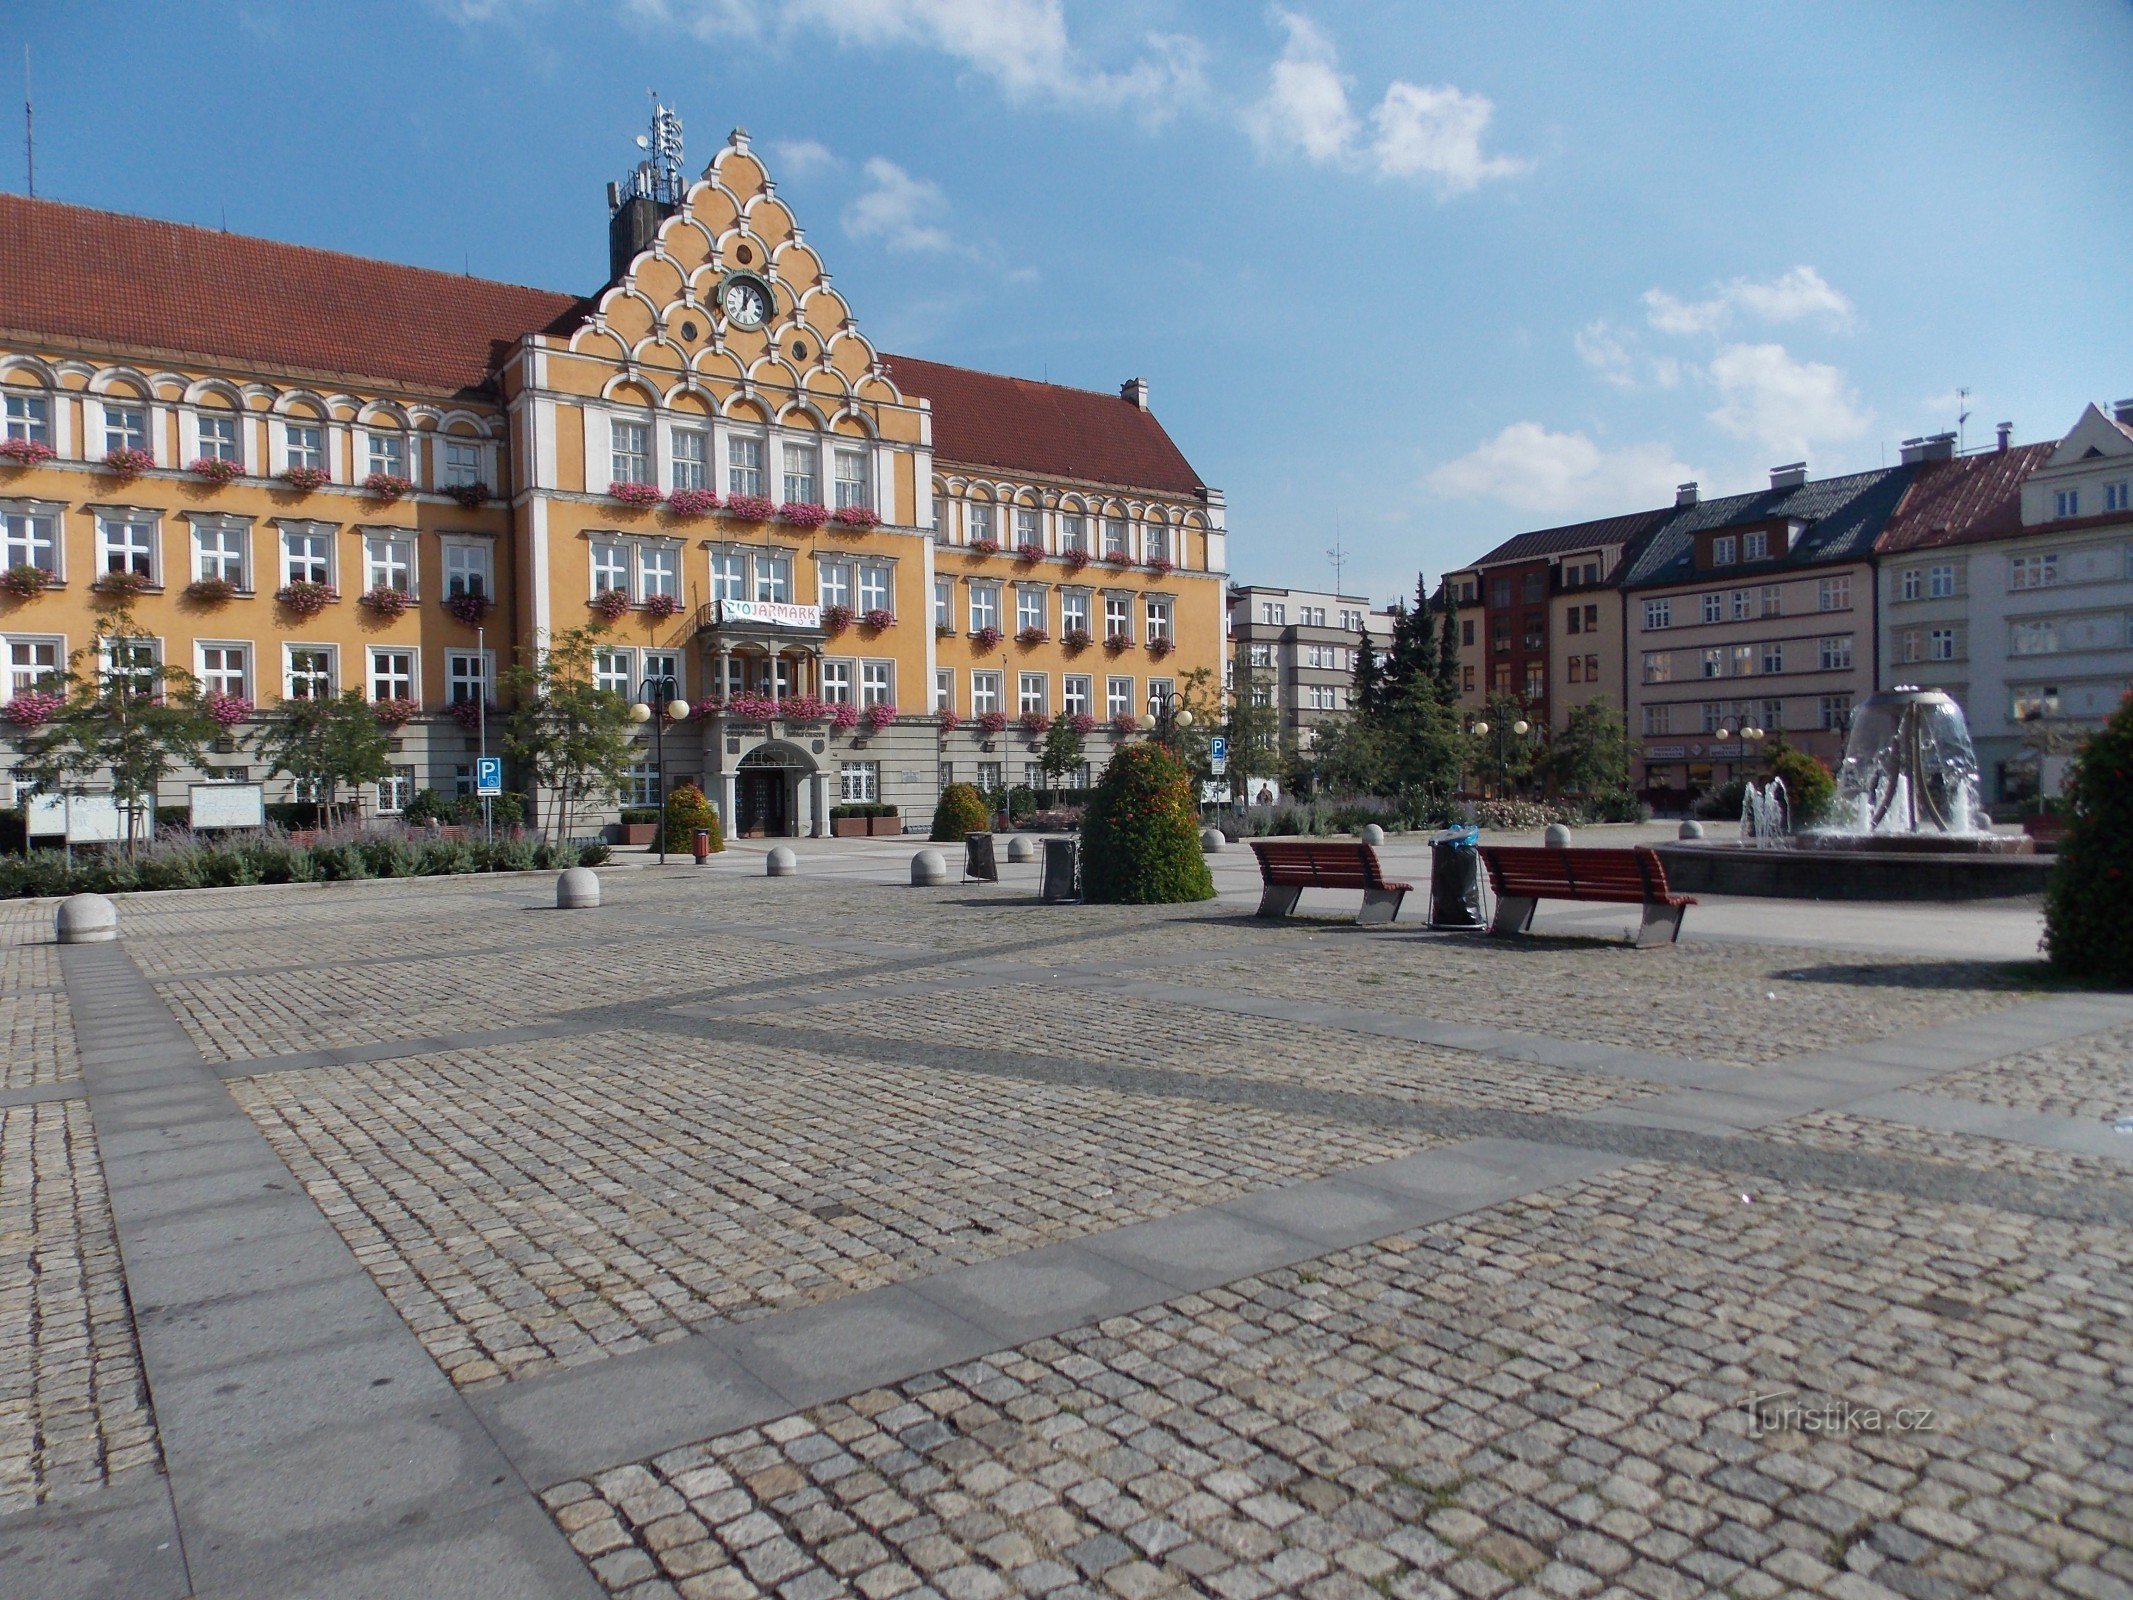 Το κυρίαρχο χαρακτηριστικό της πλατείας Těšín είναι το κτίριο του δημαρχείου